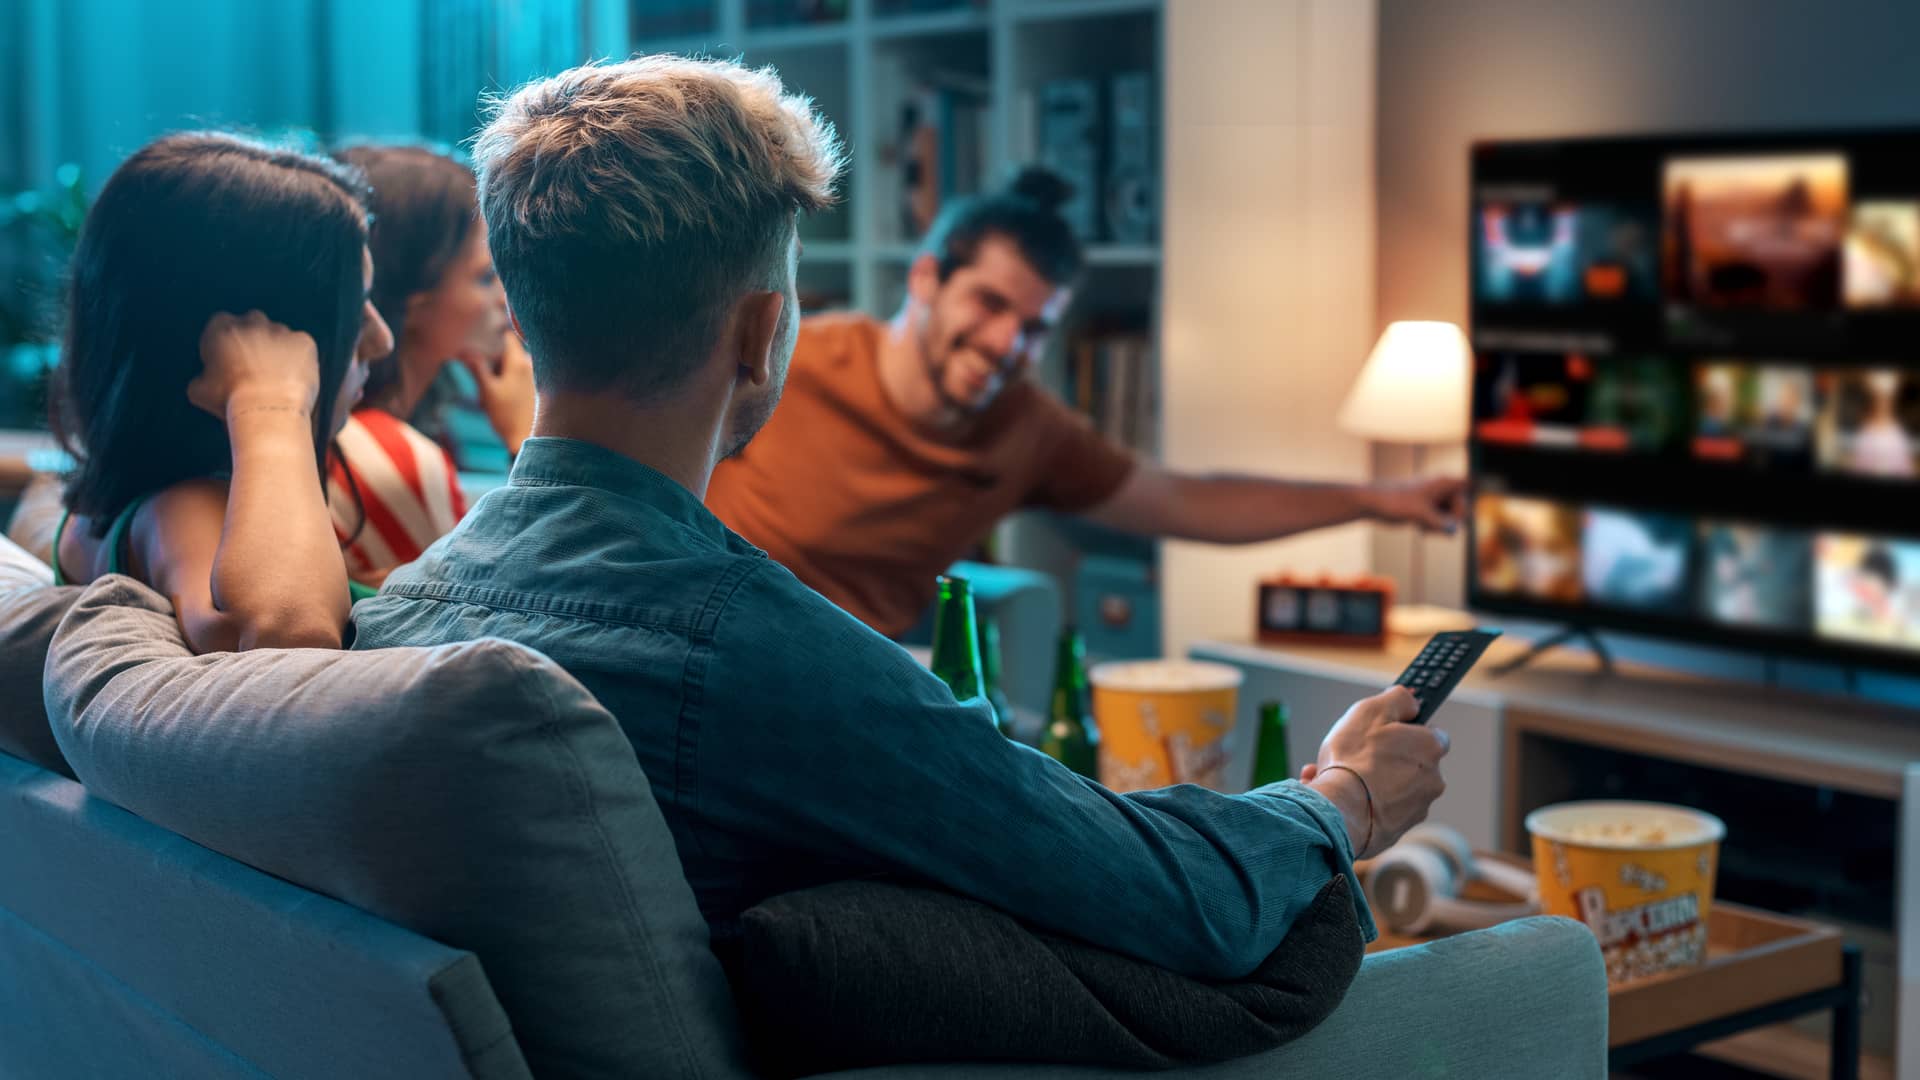 Grupo de amigos viendo la television por wifi gracias a una de las tarifas de telmex